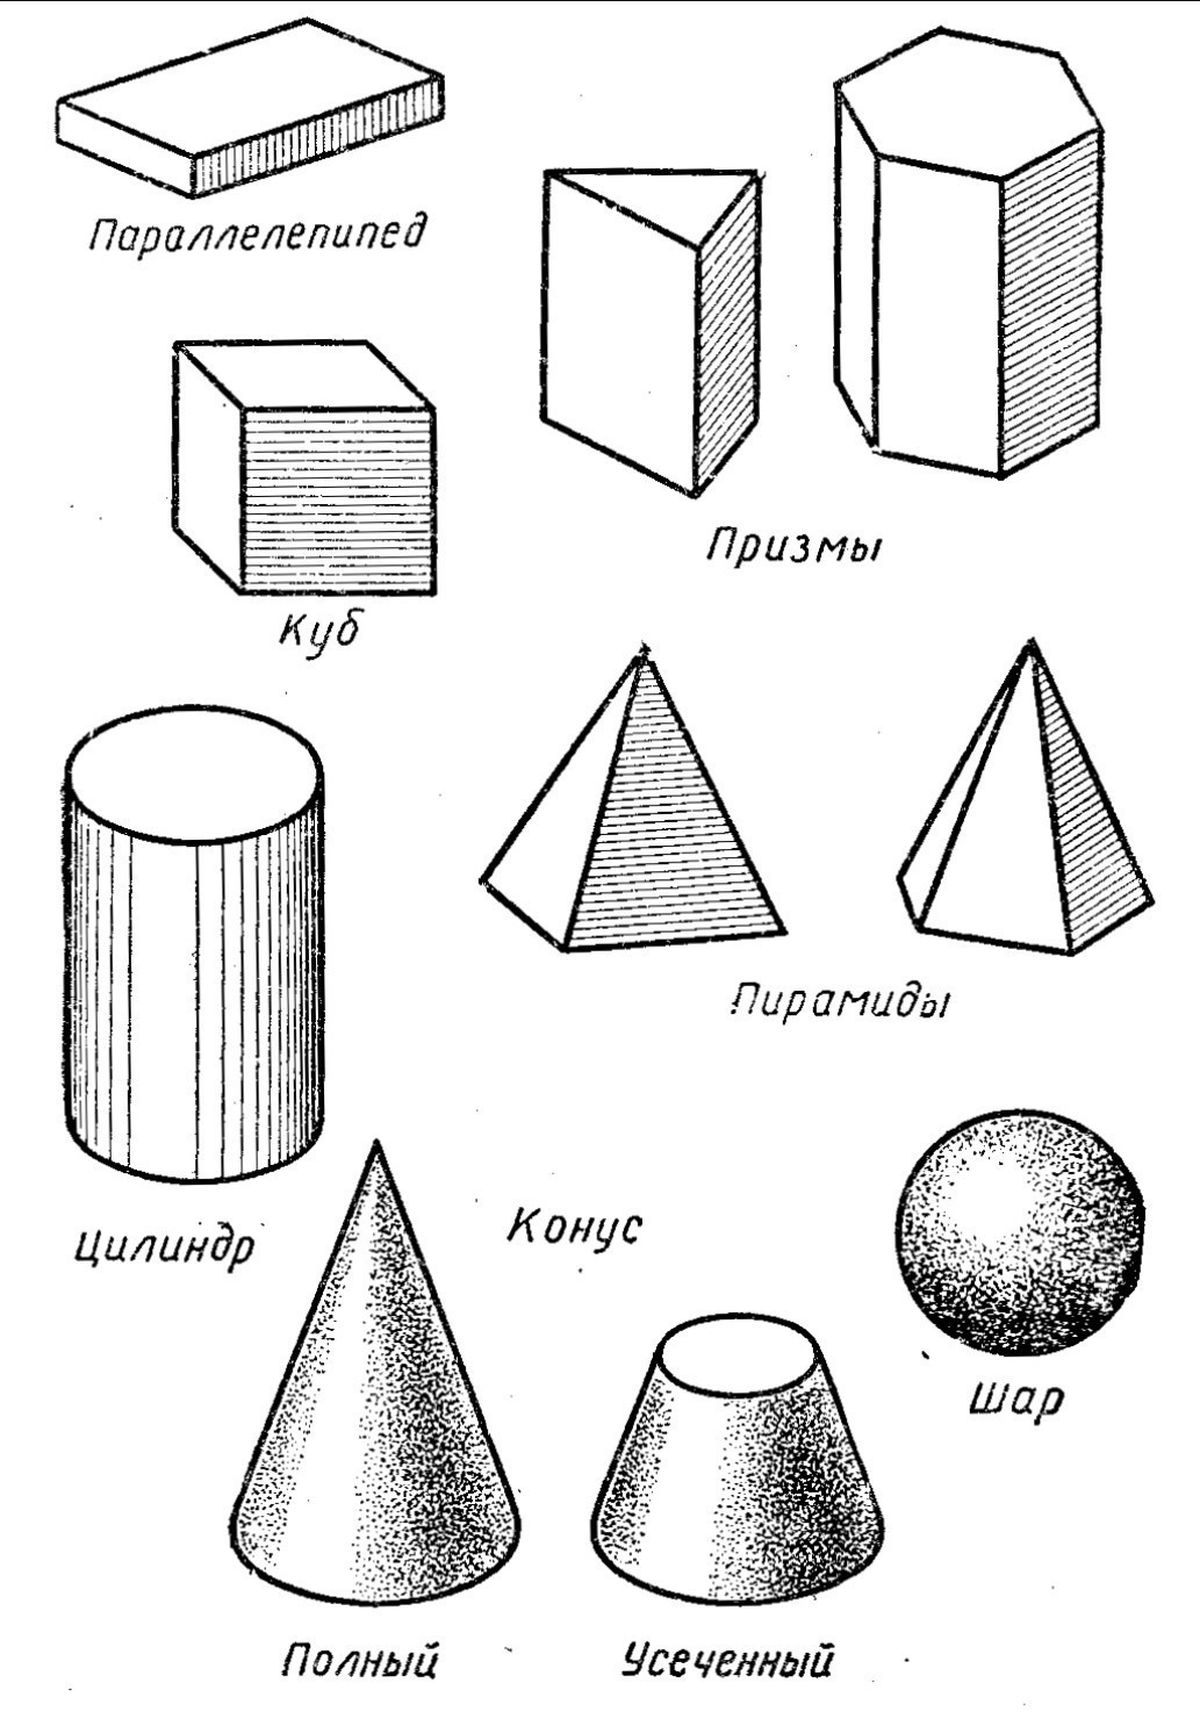 Шар формы треугольника